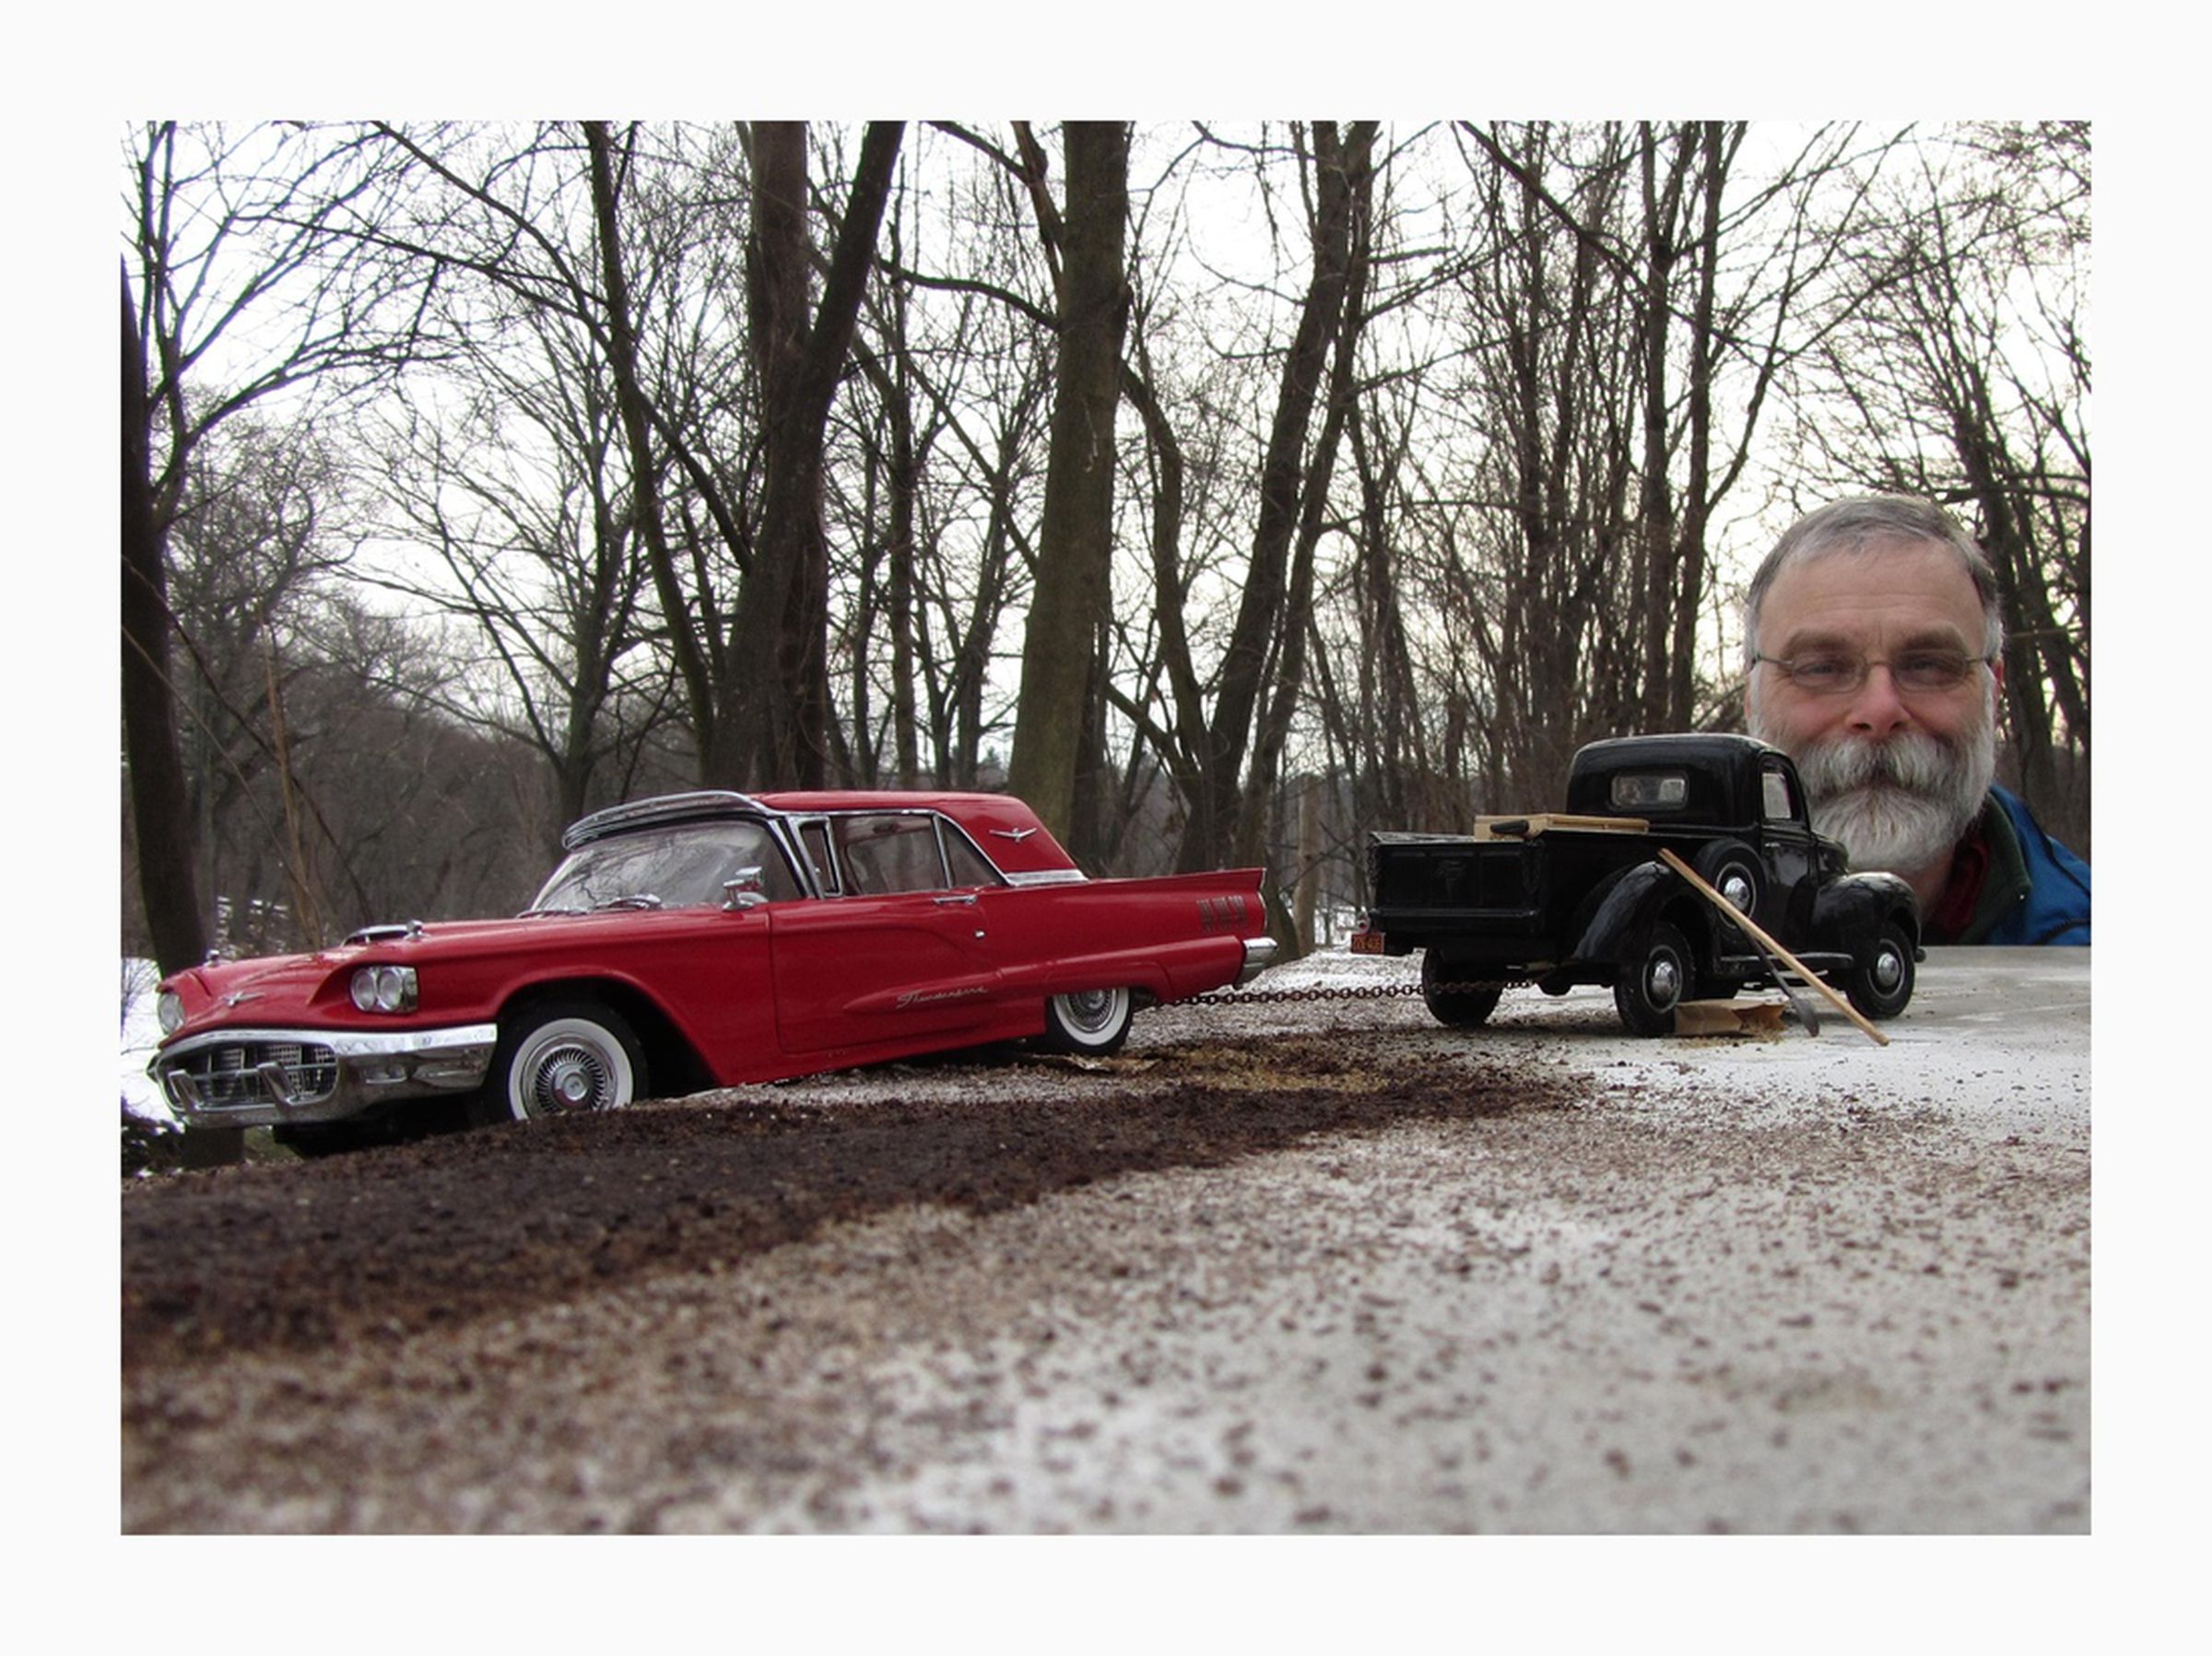 Michael Paul Smith's model car photos